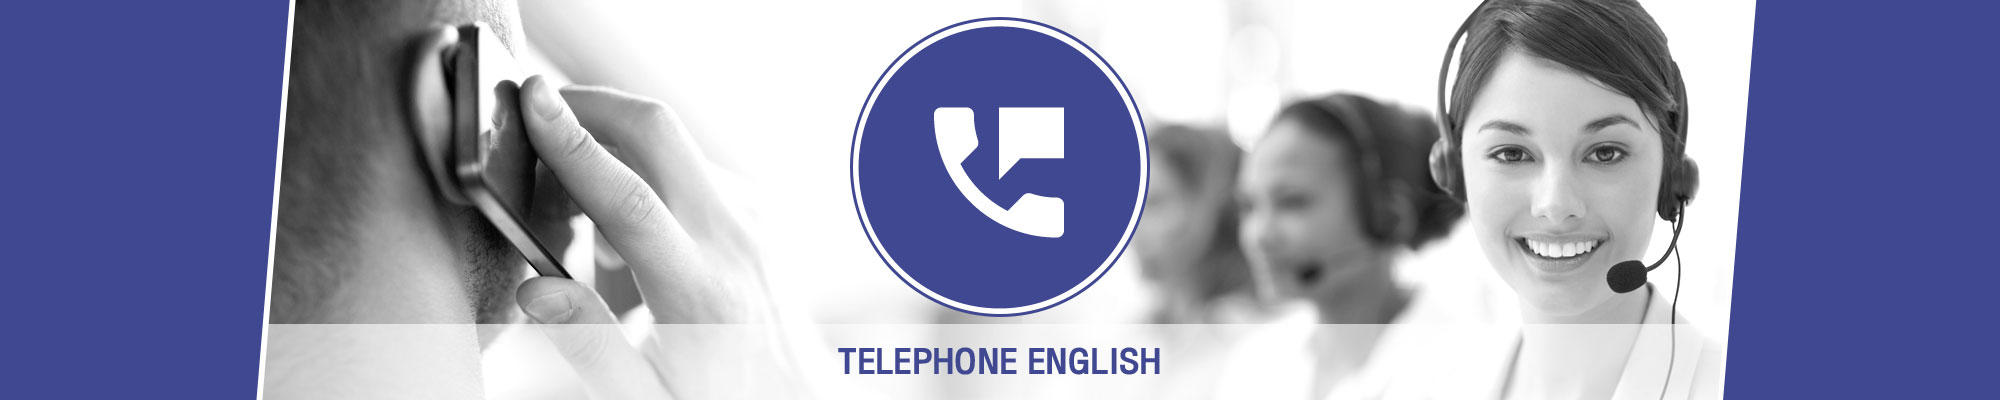 Anglokom Corporate Language Training Bangkok - Telephone English